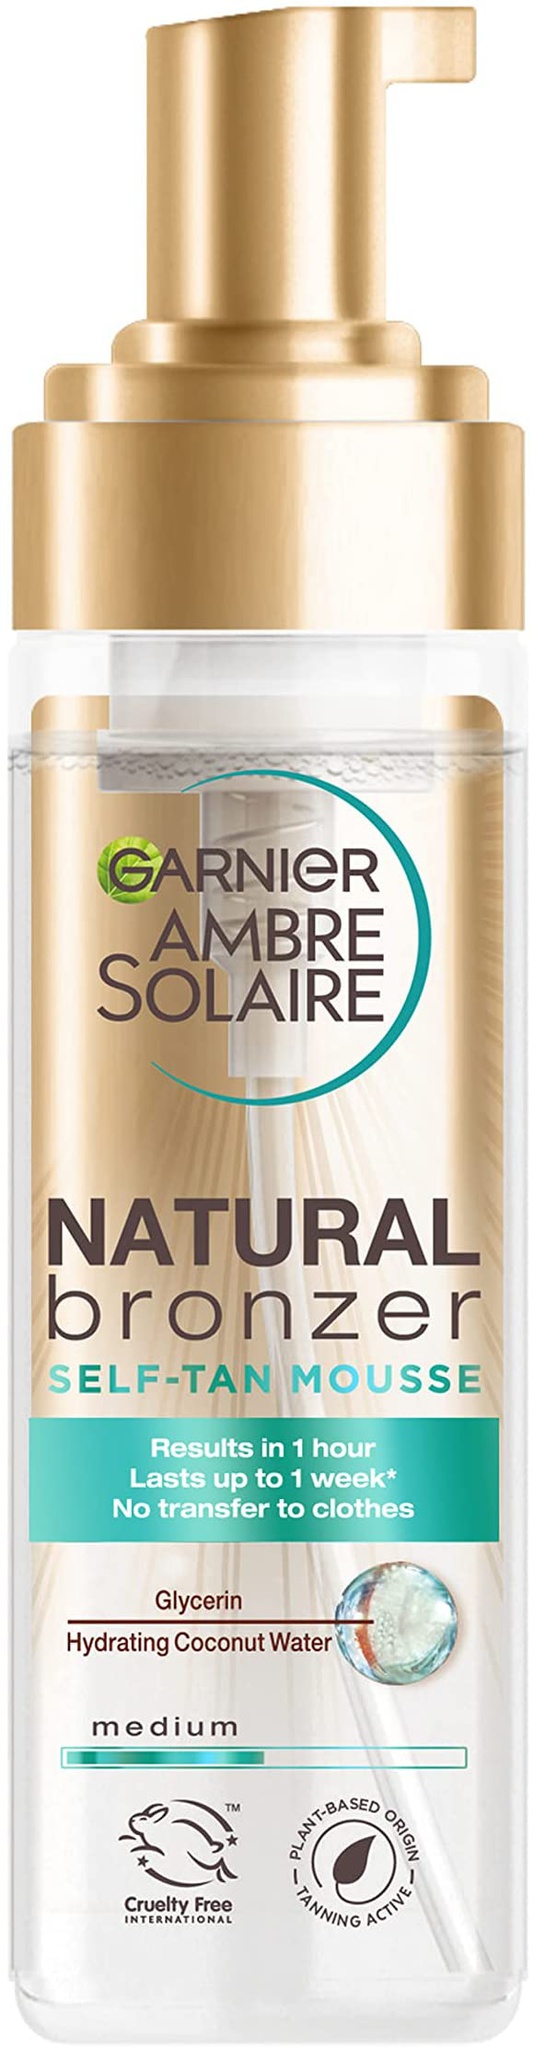 Garnier Ambre Solaire Natural Bronzer Self-Tan Mousse